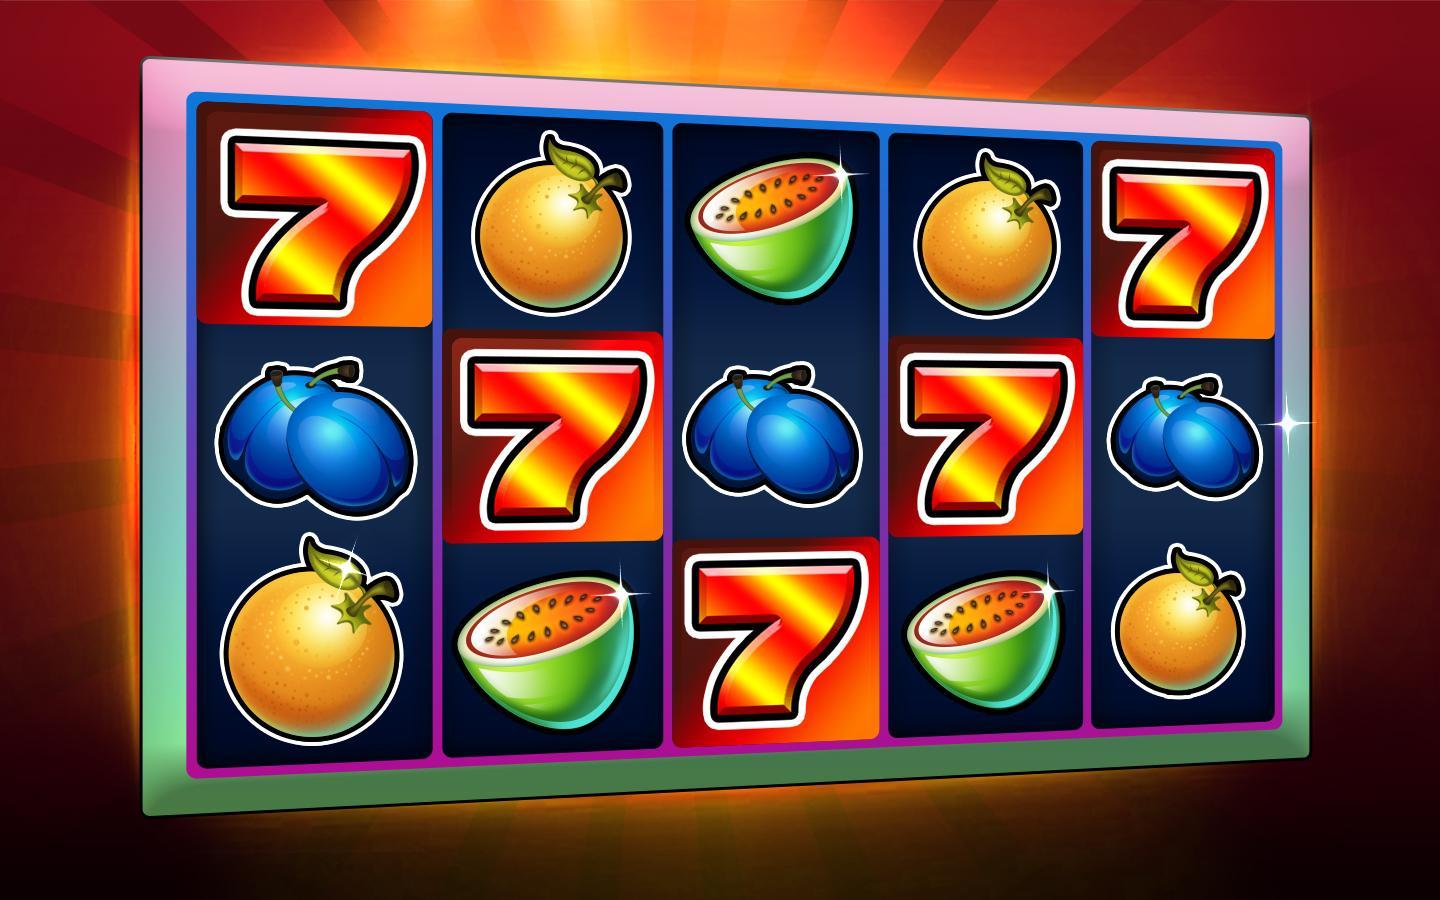 Ra slots - casino slot machines 1.7.2 Screenshot 1